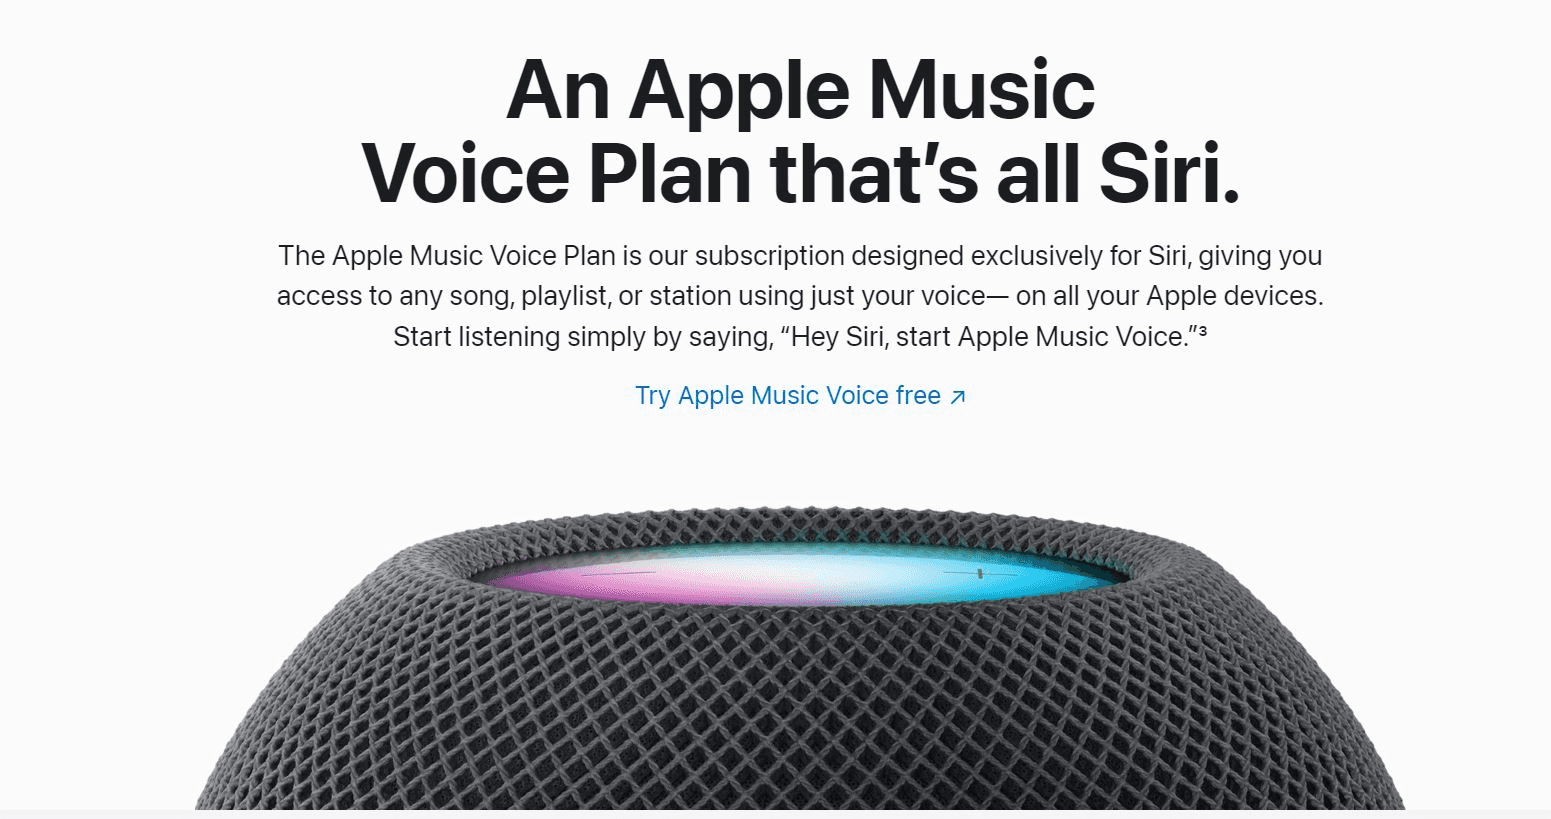 Hey Siri, start the Apple Music Voice Plan. 